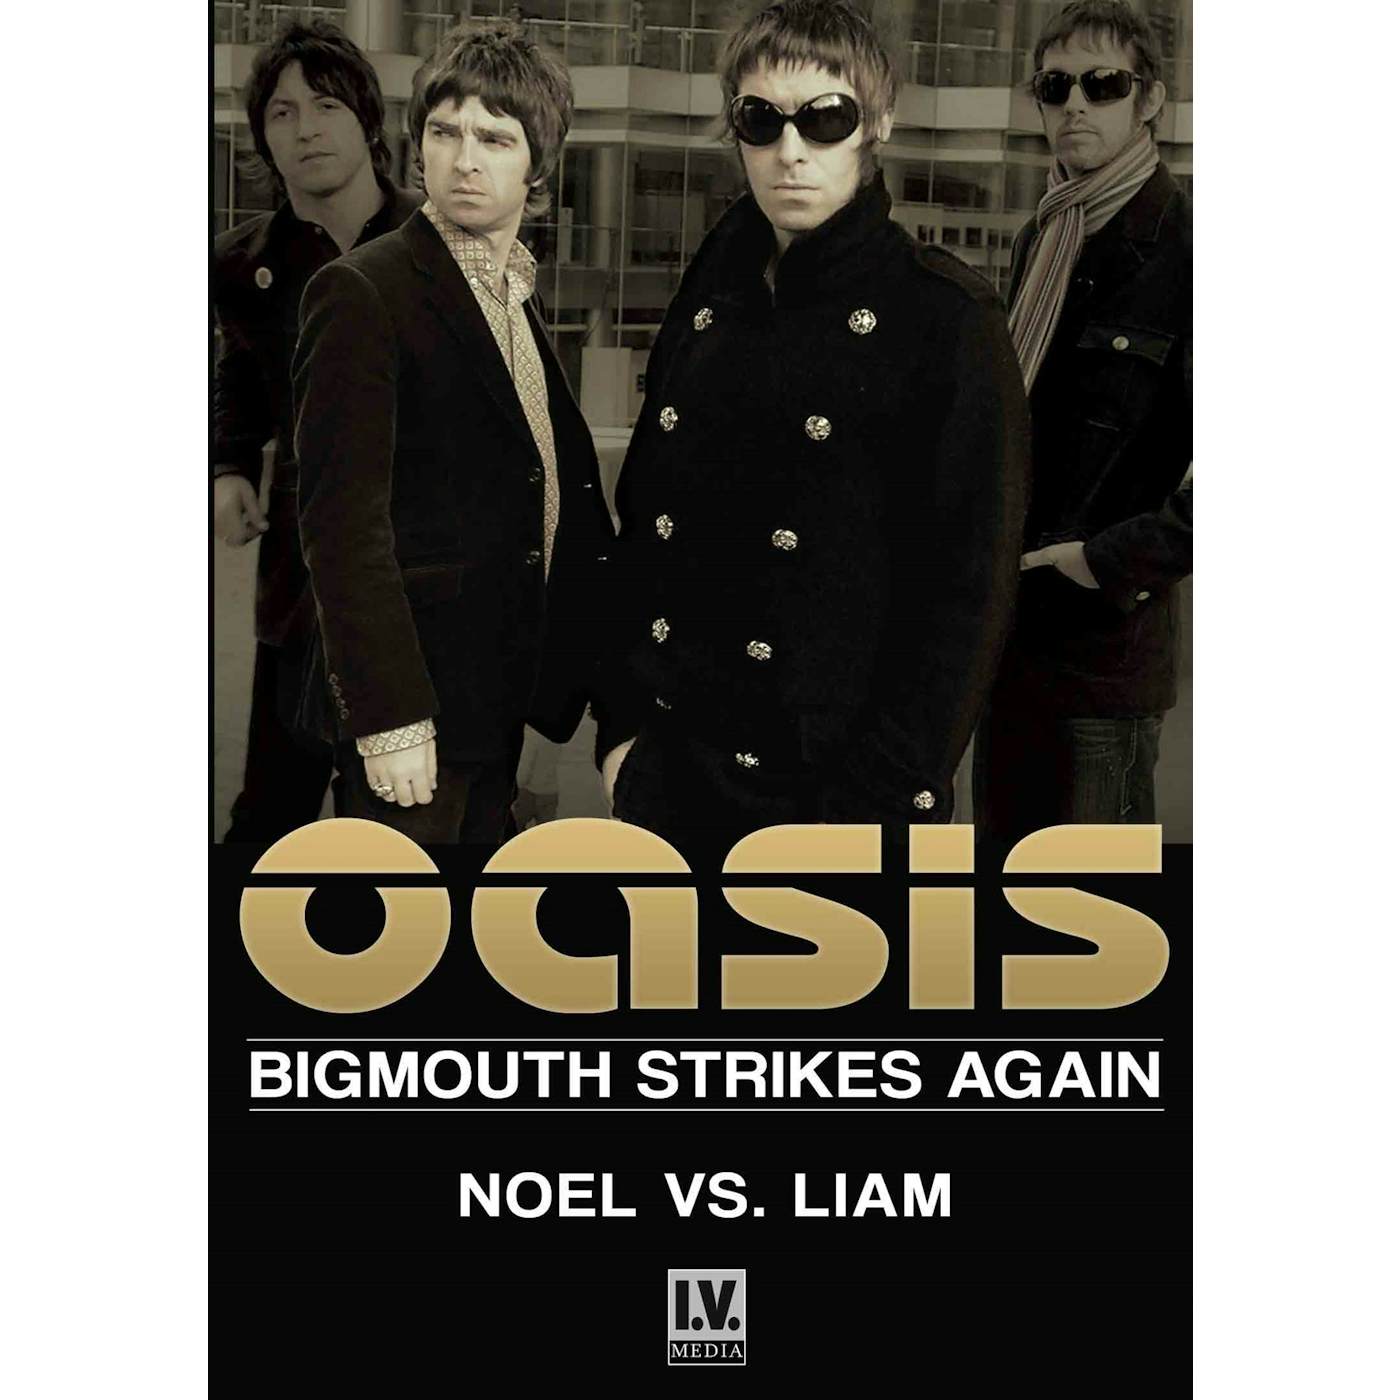 Oasis DVD - Noel Vs. Liam